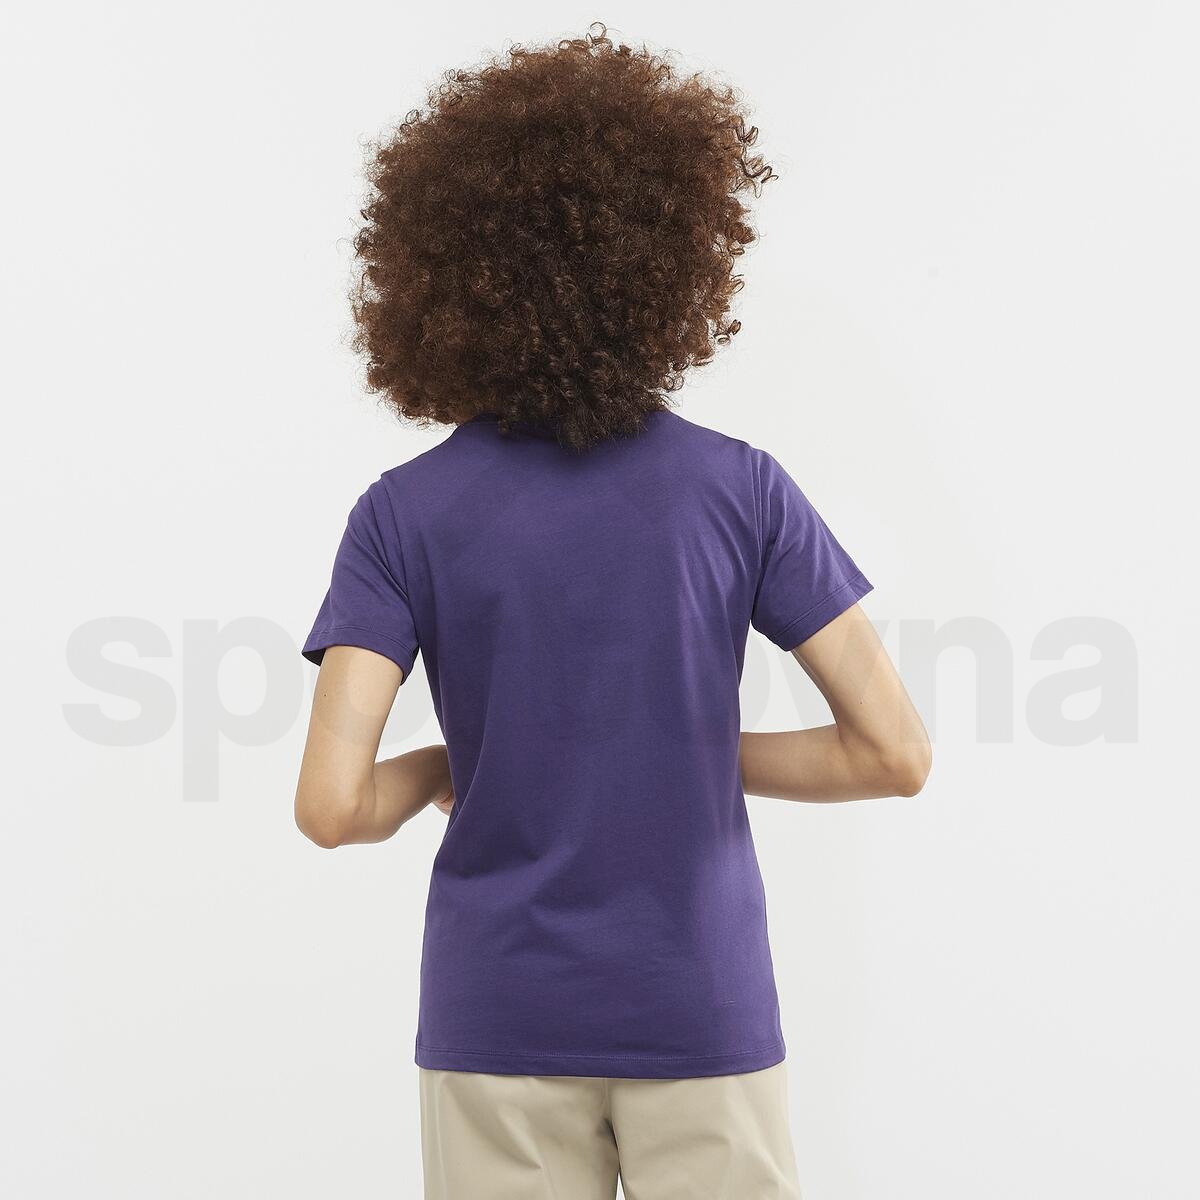 Tričko Salomon Outlife Big Logo W - fialová